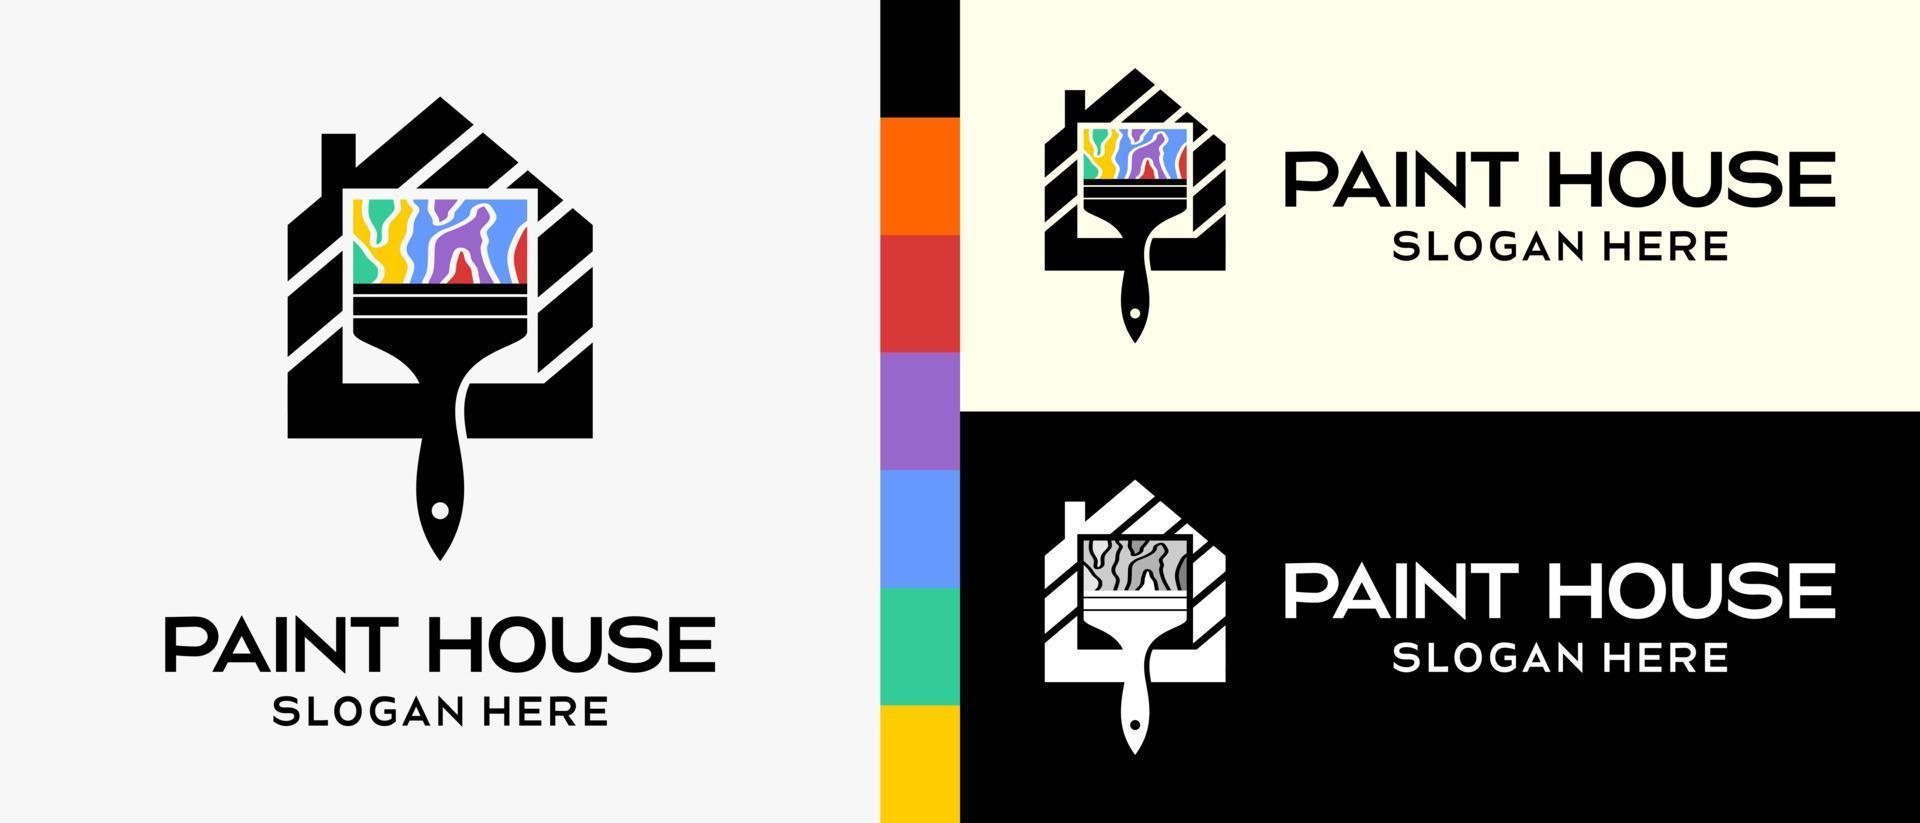 Häftigt byggnad måla logotyp design mall. paintbrush och hus i silhuett med regnbåge Färg begrepp element. vektor illustration av en logotyp för vägg eller byggnad måla. premie vektor